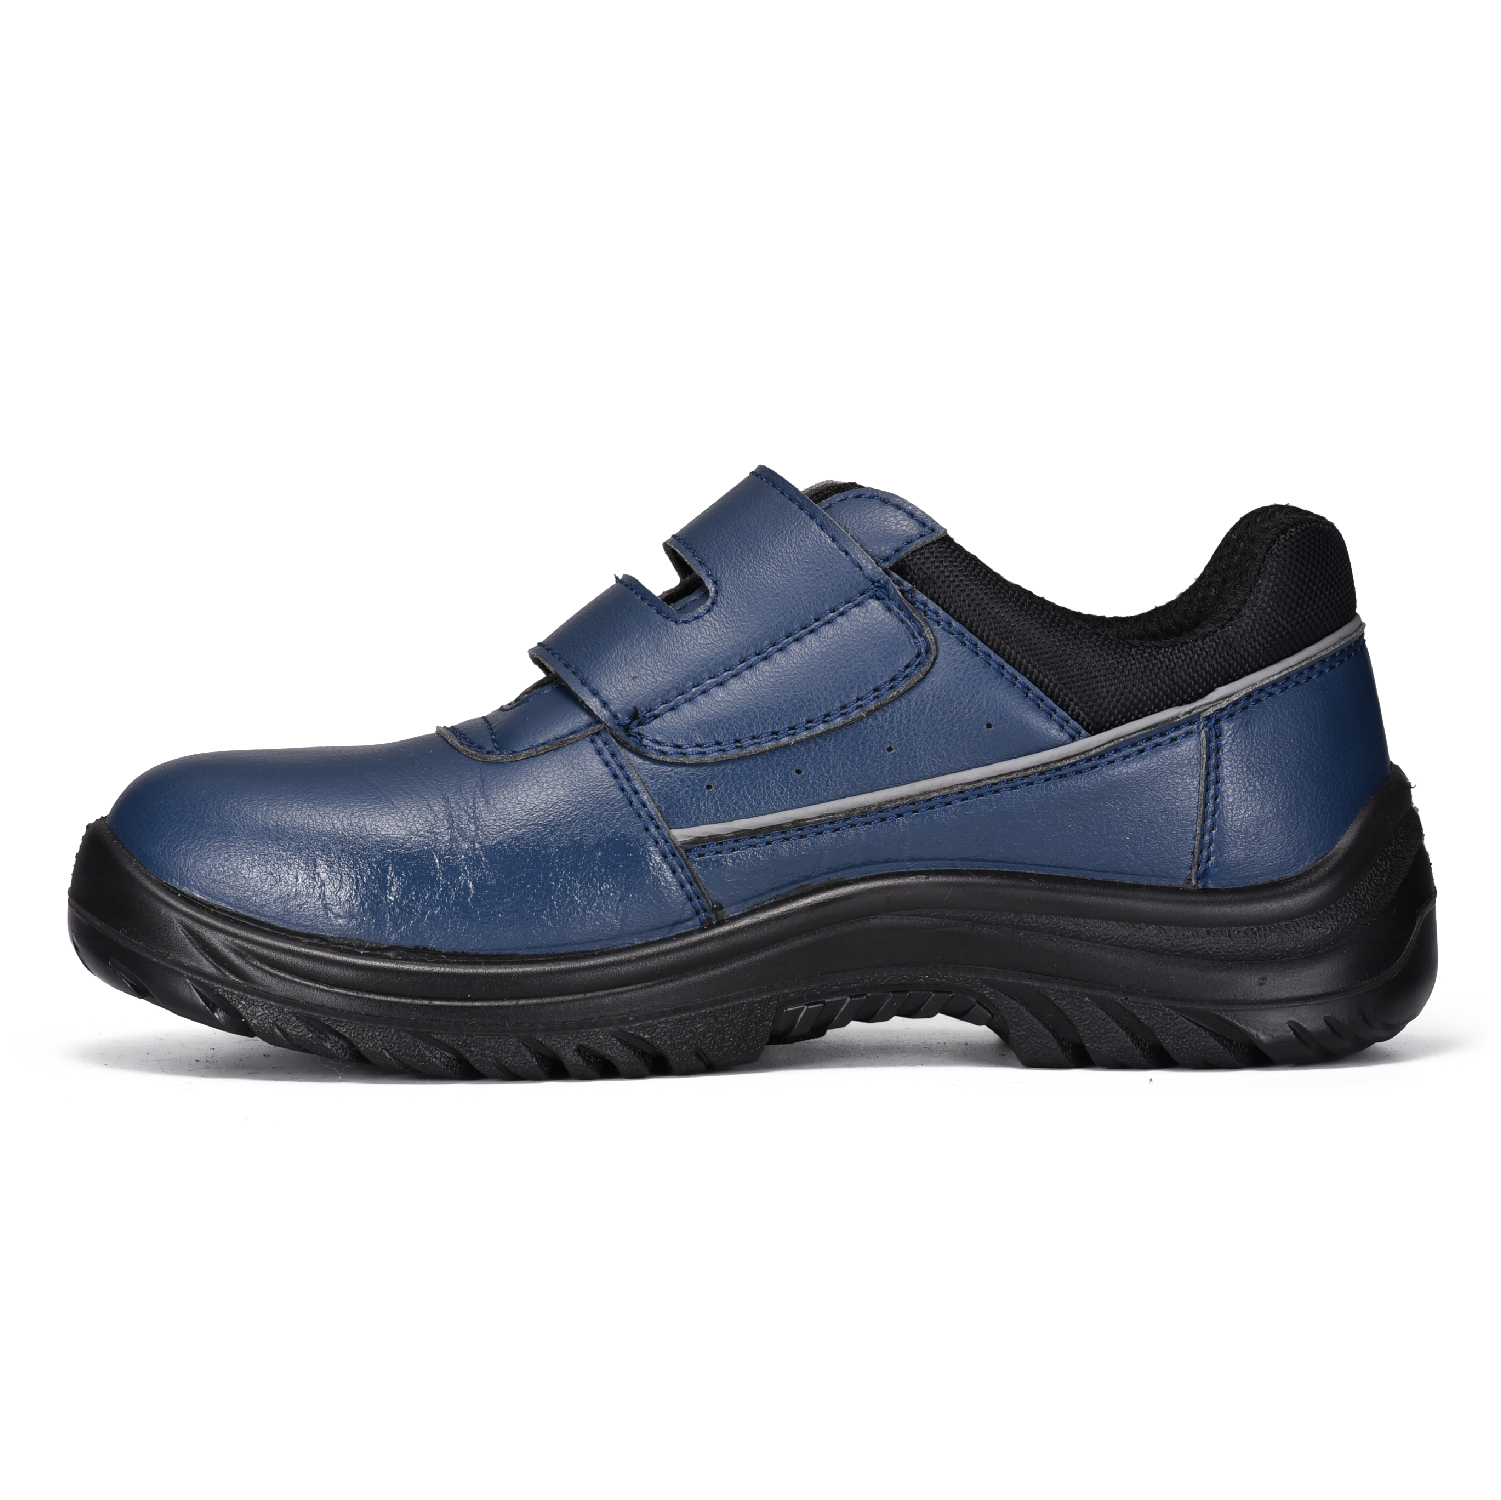 Chaussures de sécurité légères en cuir de fibre Micfo approuvées par ESD de couleur bleue S2 L-7531